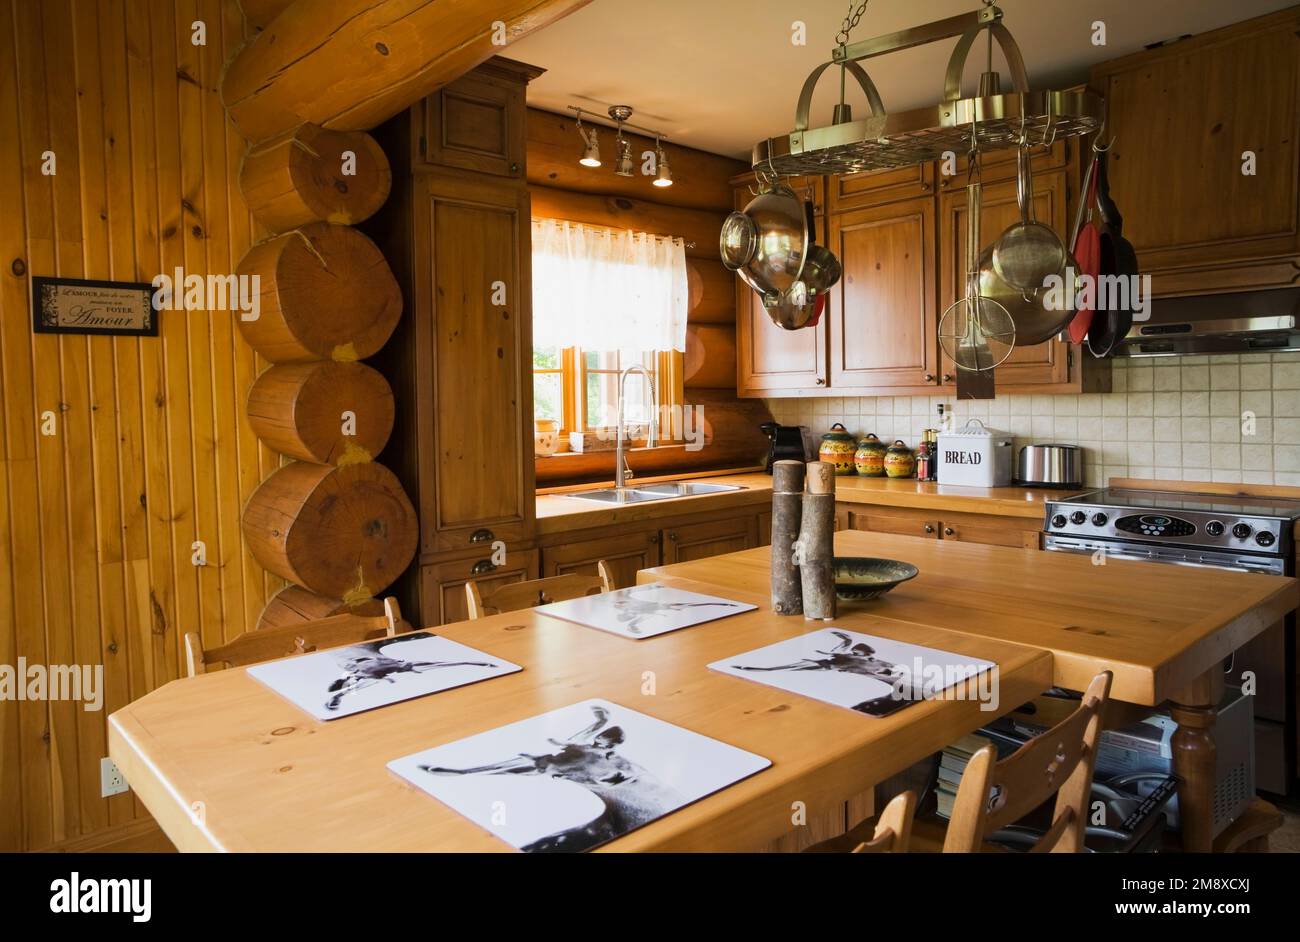 Kiefernholzschränke, Esstisch und Insel in Küche im skandinavischen Cottage  Stil Blockhaus, Quebec, Kanada. Dieses Bild ist Eigentum freigegeben. CU  Stockfotografie - Alamy